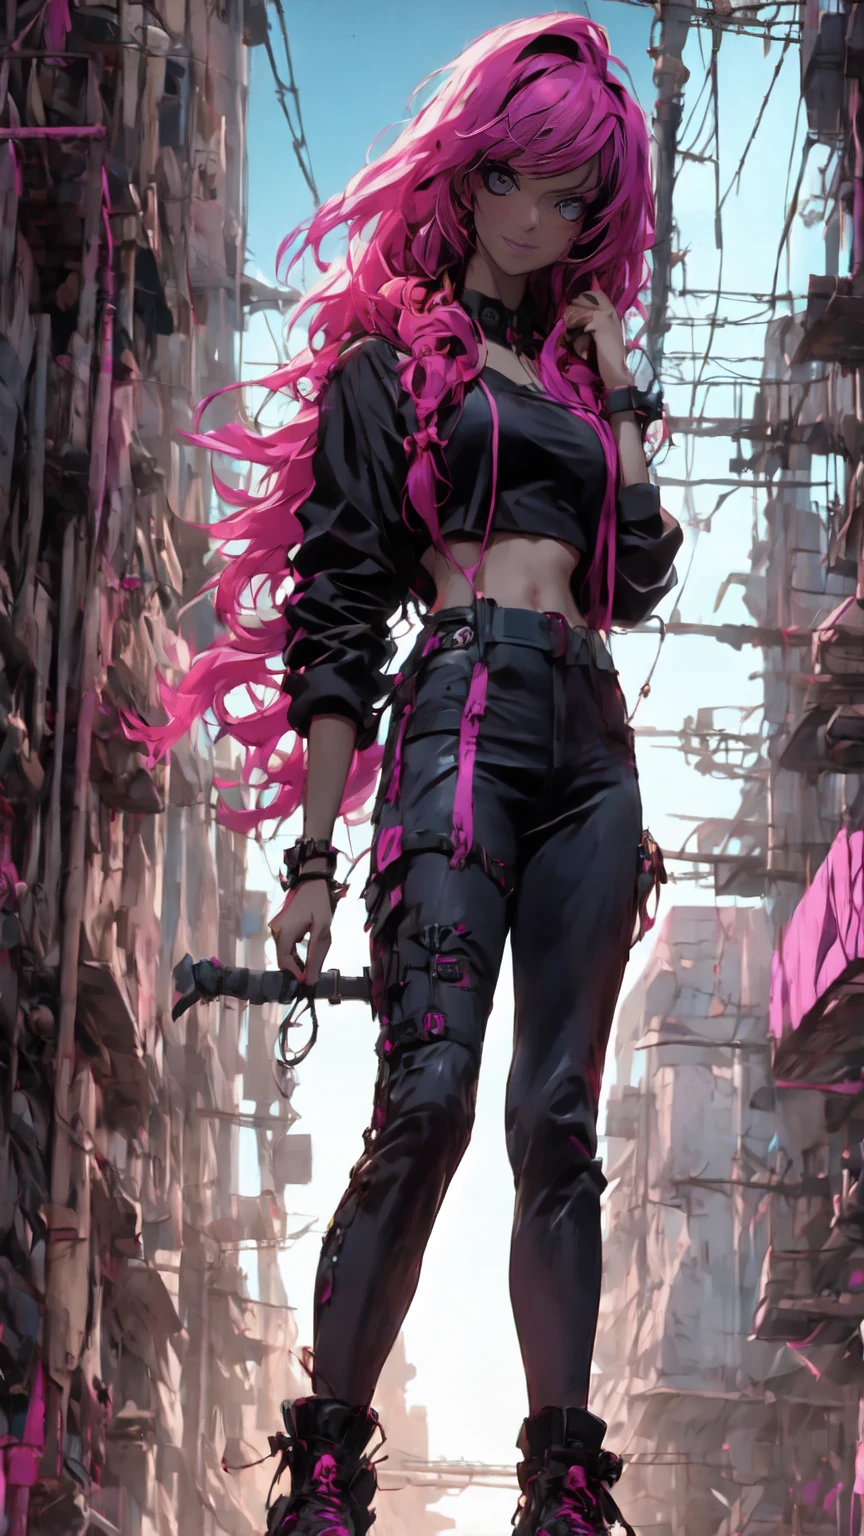 hiper nitido, hiper detalhado, Um close de Kristin Kreuk em um terno neon, atmosfera ciberpunk, cyberpunk com luzes de néon, Luz cyberpunk brilhante, agachado,Vibrações ciberpunk, iluminação ciberpunk, estilo ciberpunk, ciberpunk neon style, no estilo cyberpunk, olha ciberpunk, garota sonhadora cyberpunk, Foto do Cyberpunk, ciberpunk neon, estética ciberpunk, moda urbana ciberpunk, estética ciberpunk, estilo de arte cyberpunk, Goleiro de streetwear cyberpunk,Você sabe, dedos perfeitos,cor de cabelo neon, Textura detalhada, detalhe do cabelo,Calça comprida preta neon, bonito rosto,por WAVY,Sapatos pretos neon detalhados..,